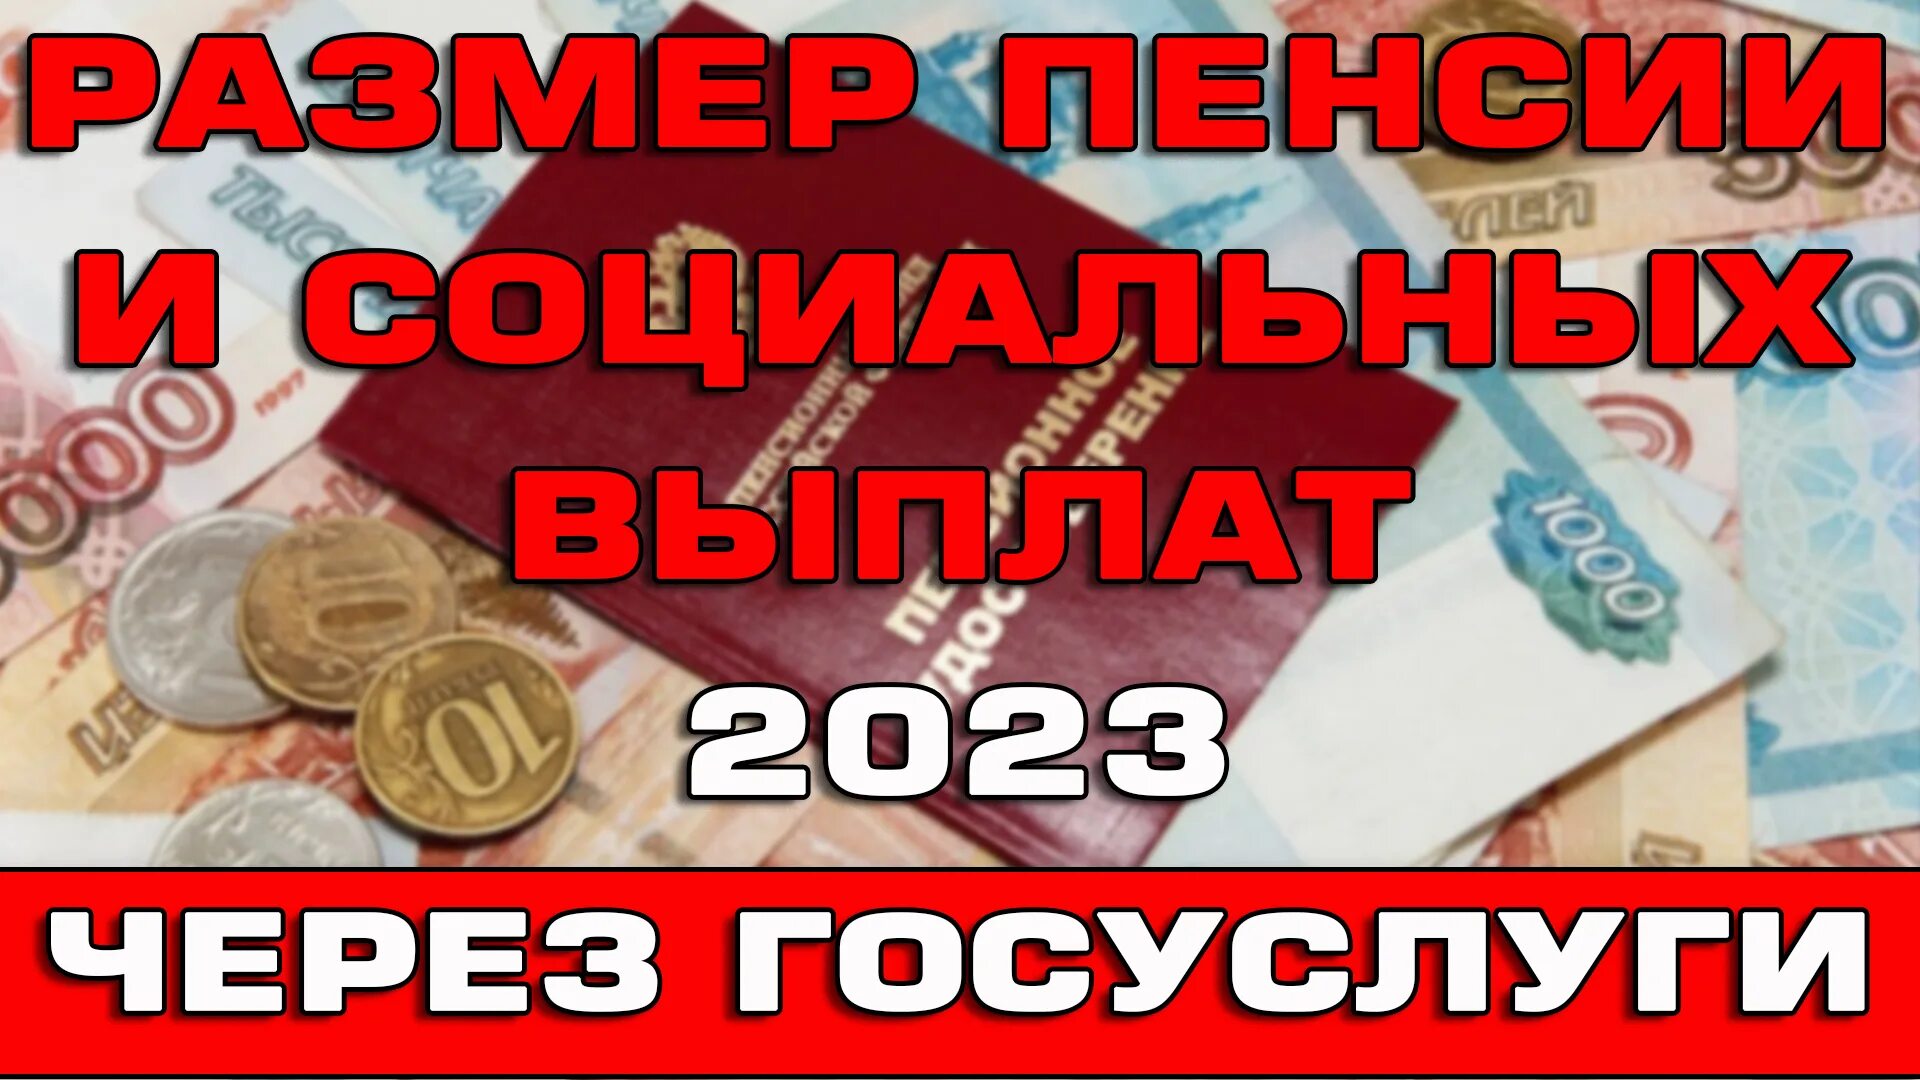 Пенсионный выплаты 2023. Выплаты на детей в 2023. Соцвыплаты в 2023 году в Казахстане. Новые пособия на детей в 2023 году. Пособие по пенсии в Израиле 2023 году.